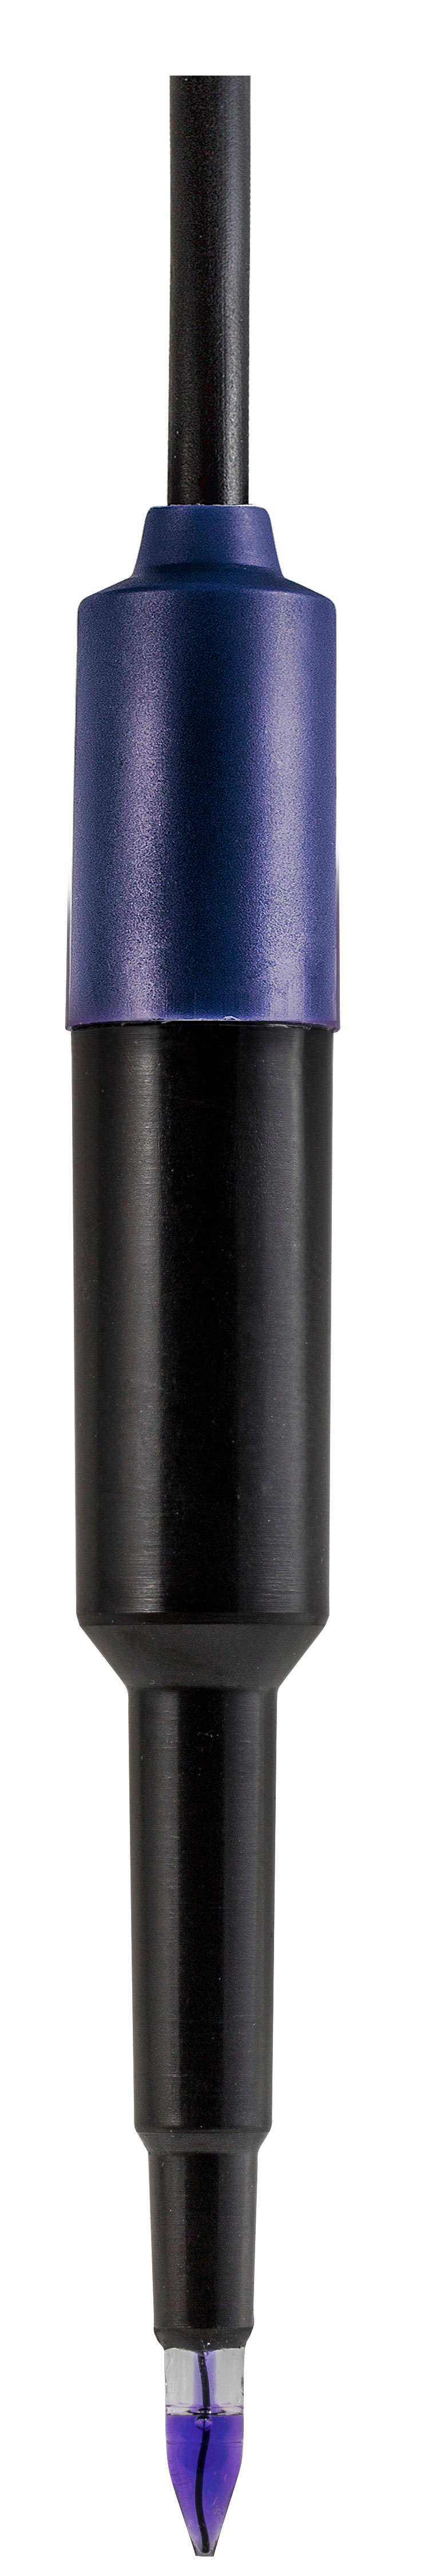 Electrodo de pH XS 2 PORE F TEMP, diámetro Ø 6 mm, L= 35 mm, rango pH 0…14, temp. 0…+60 °C, cuerpo POM. Electrolito polímero. Con sensor de temperatura Pt1000 integrado, con cable fijo y conector BNC-banana Ø 4 mm. Para penetración en alimentos Ø 6 mm.